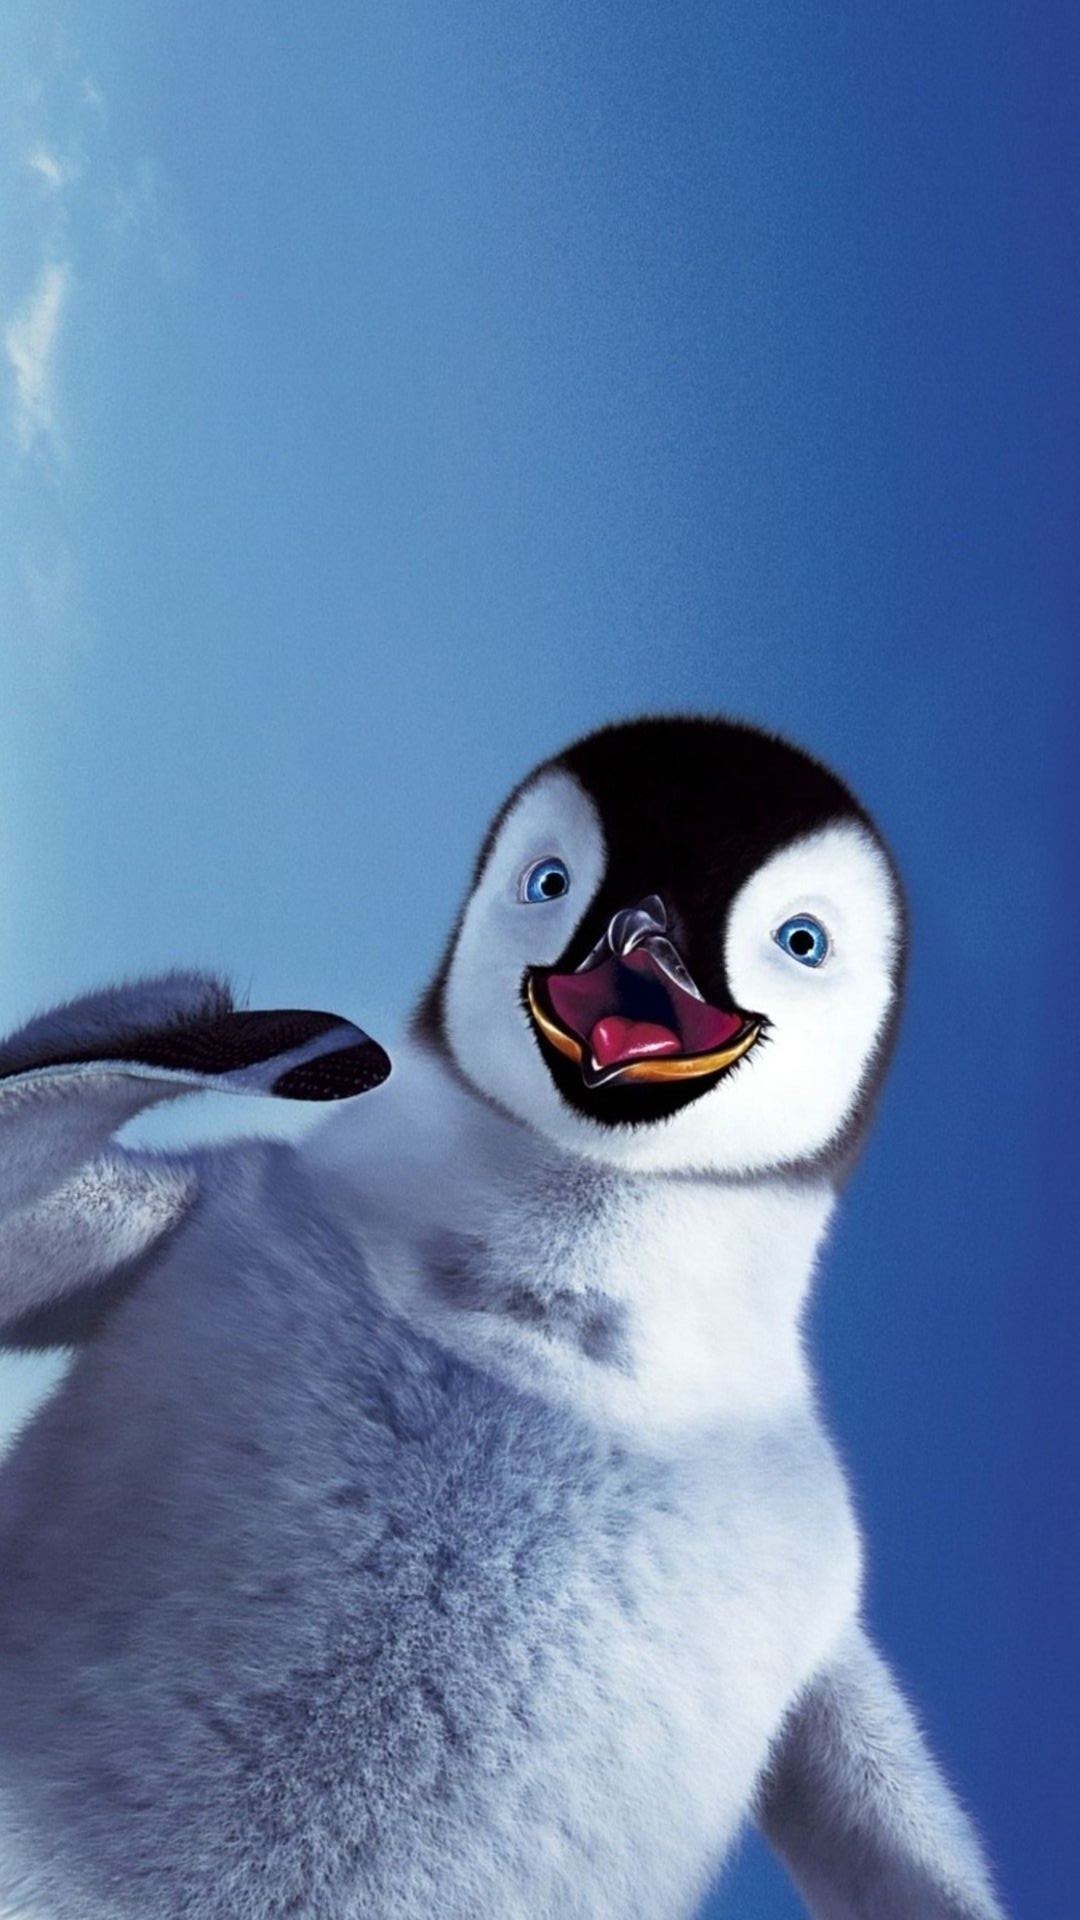 Happy Feet, Penguin wallpapers, Cute characters, Antarctic setting, 1080x1920 Full HD Phone